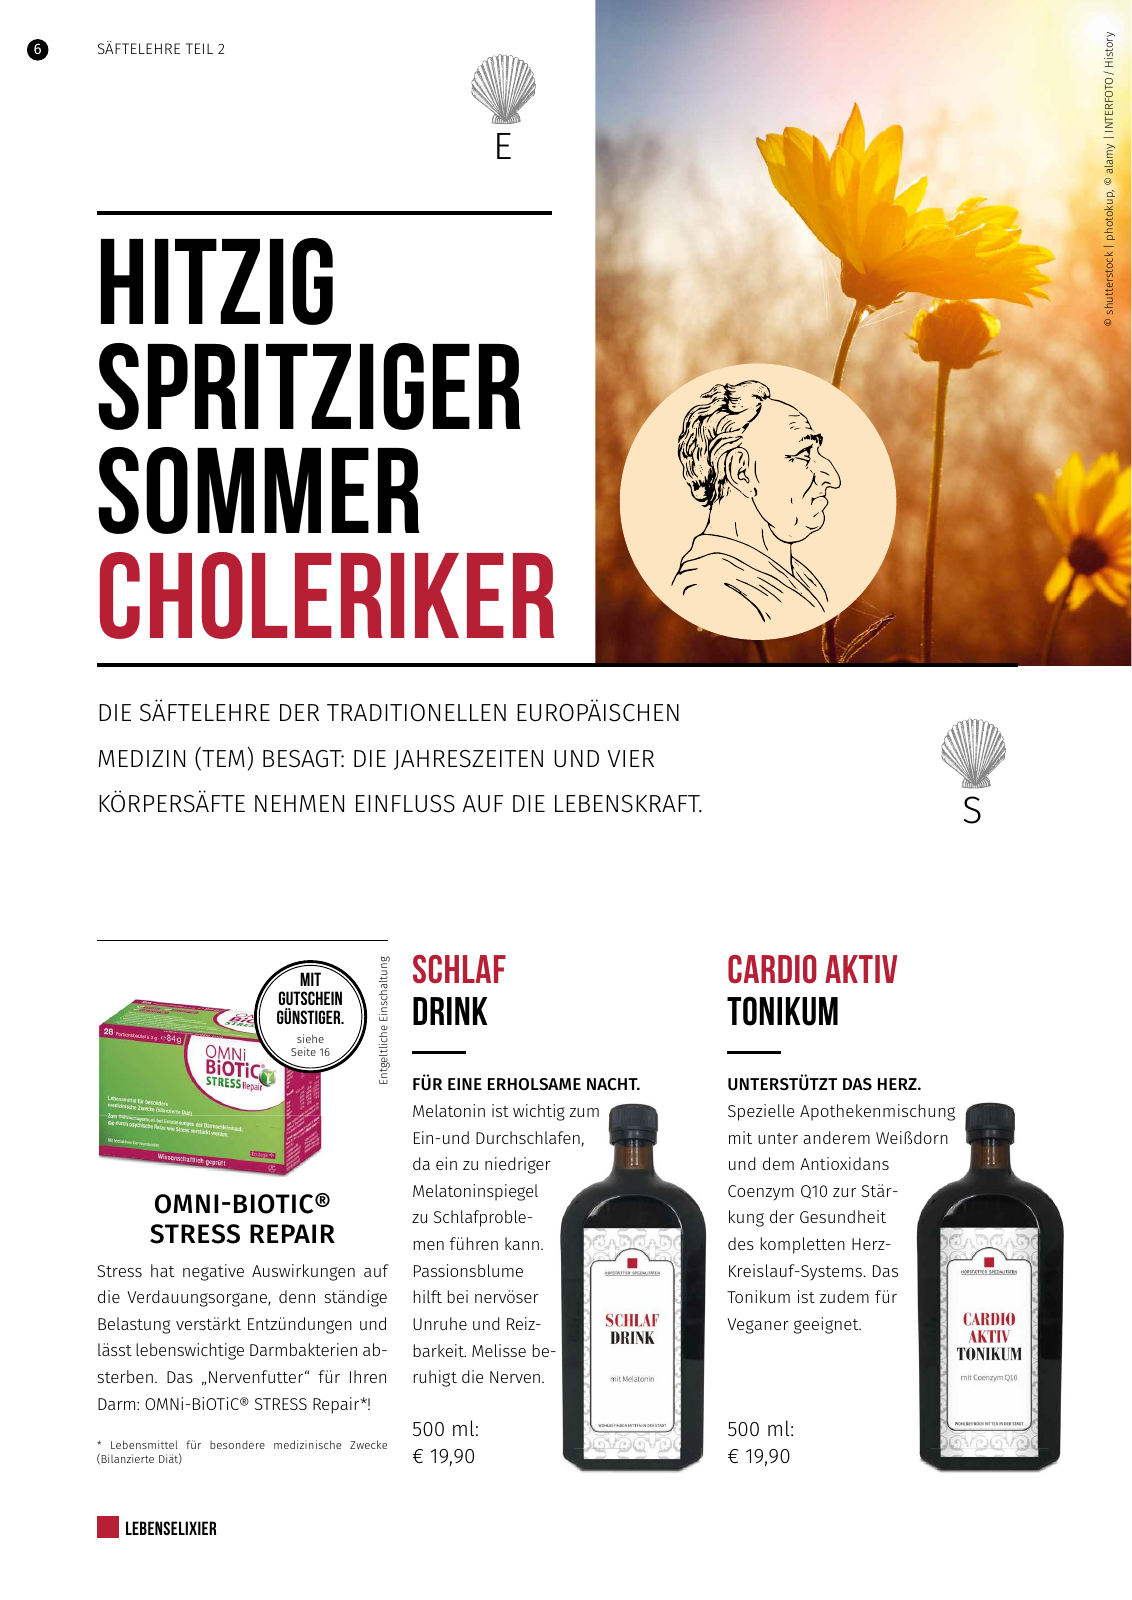 Vorschau Hofstaetter-Apotheke Lebenselixier Sommer 2019 Seite 6